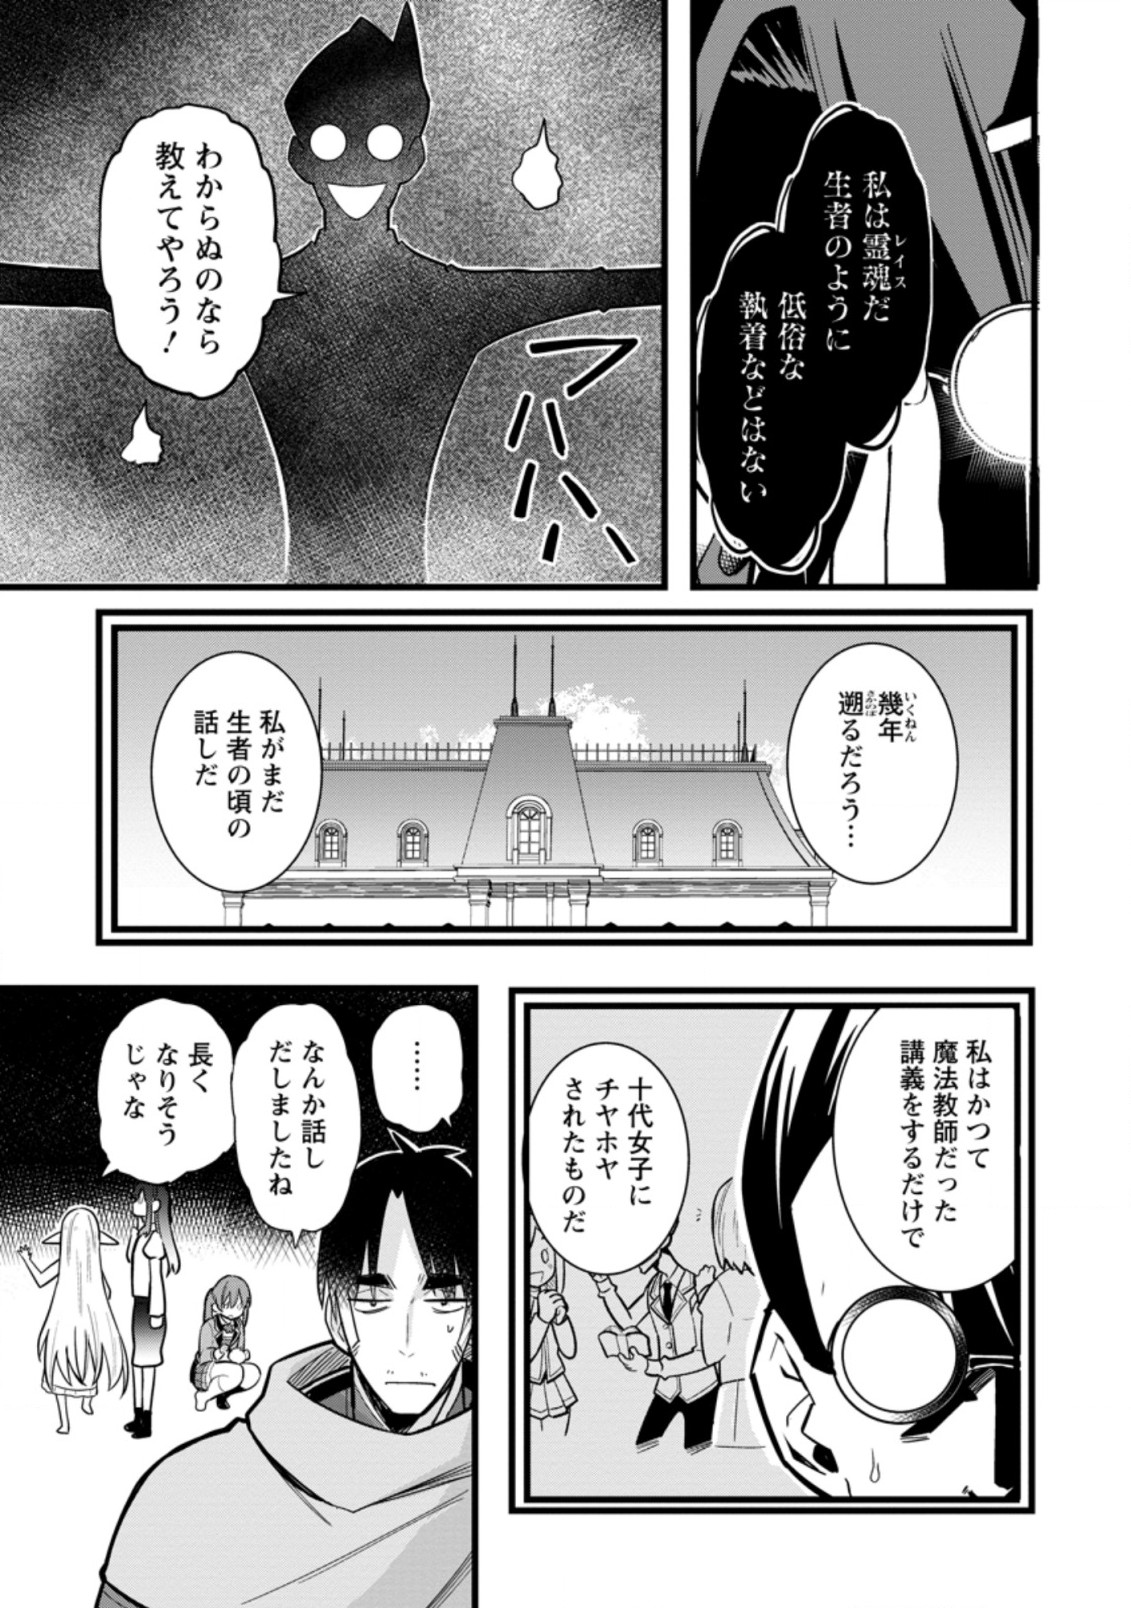 Isekai Papa Katsu Oji-sa (Manga) en VF